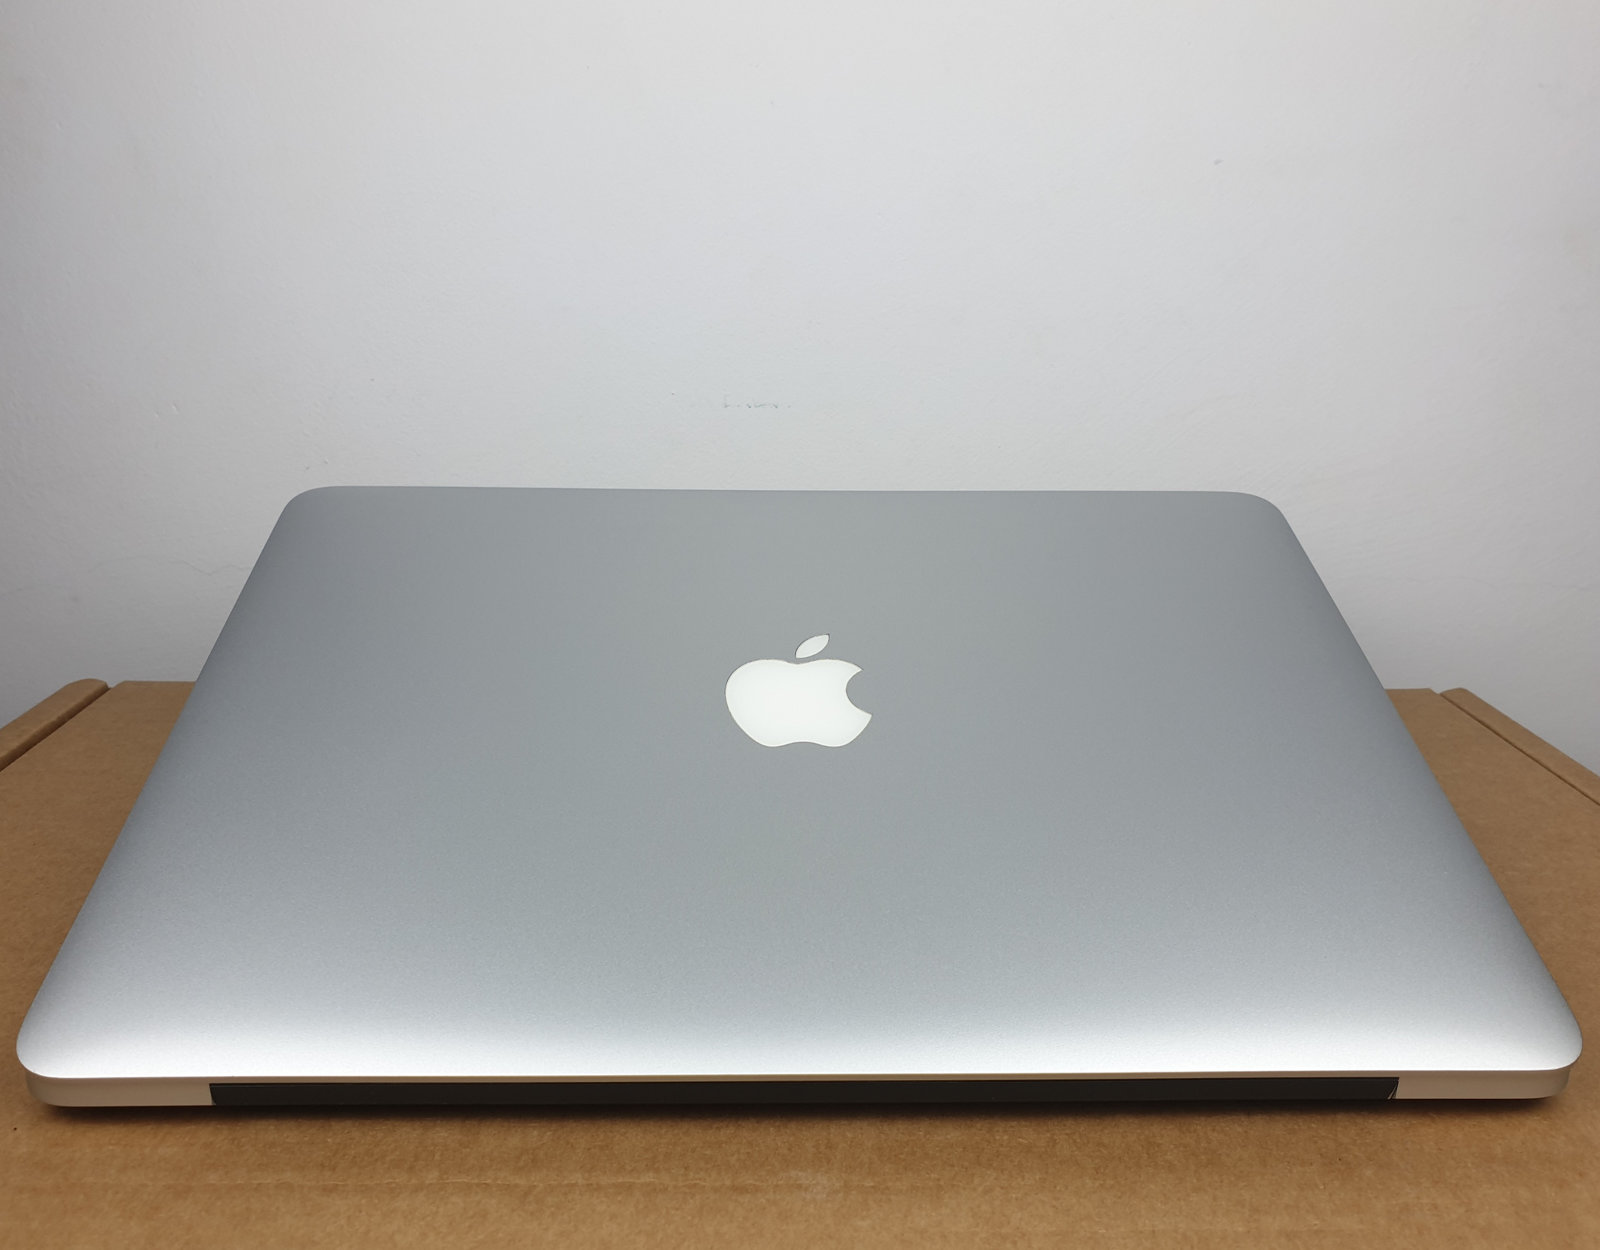 MacBook pro core i5 2014 マジックマウス付き www.cmaraioses.ma.gov.br